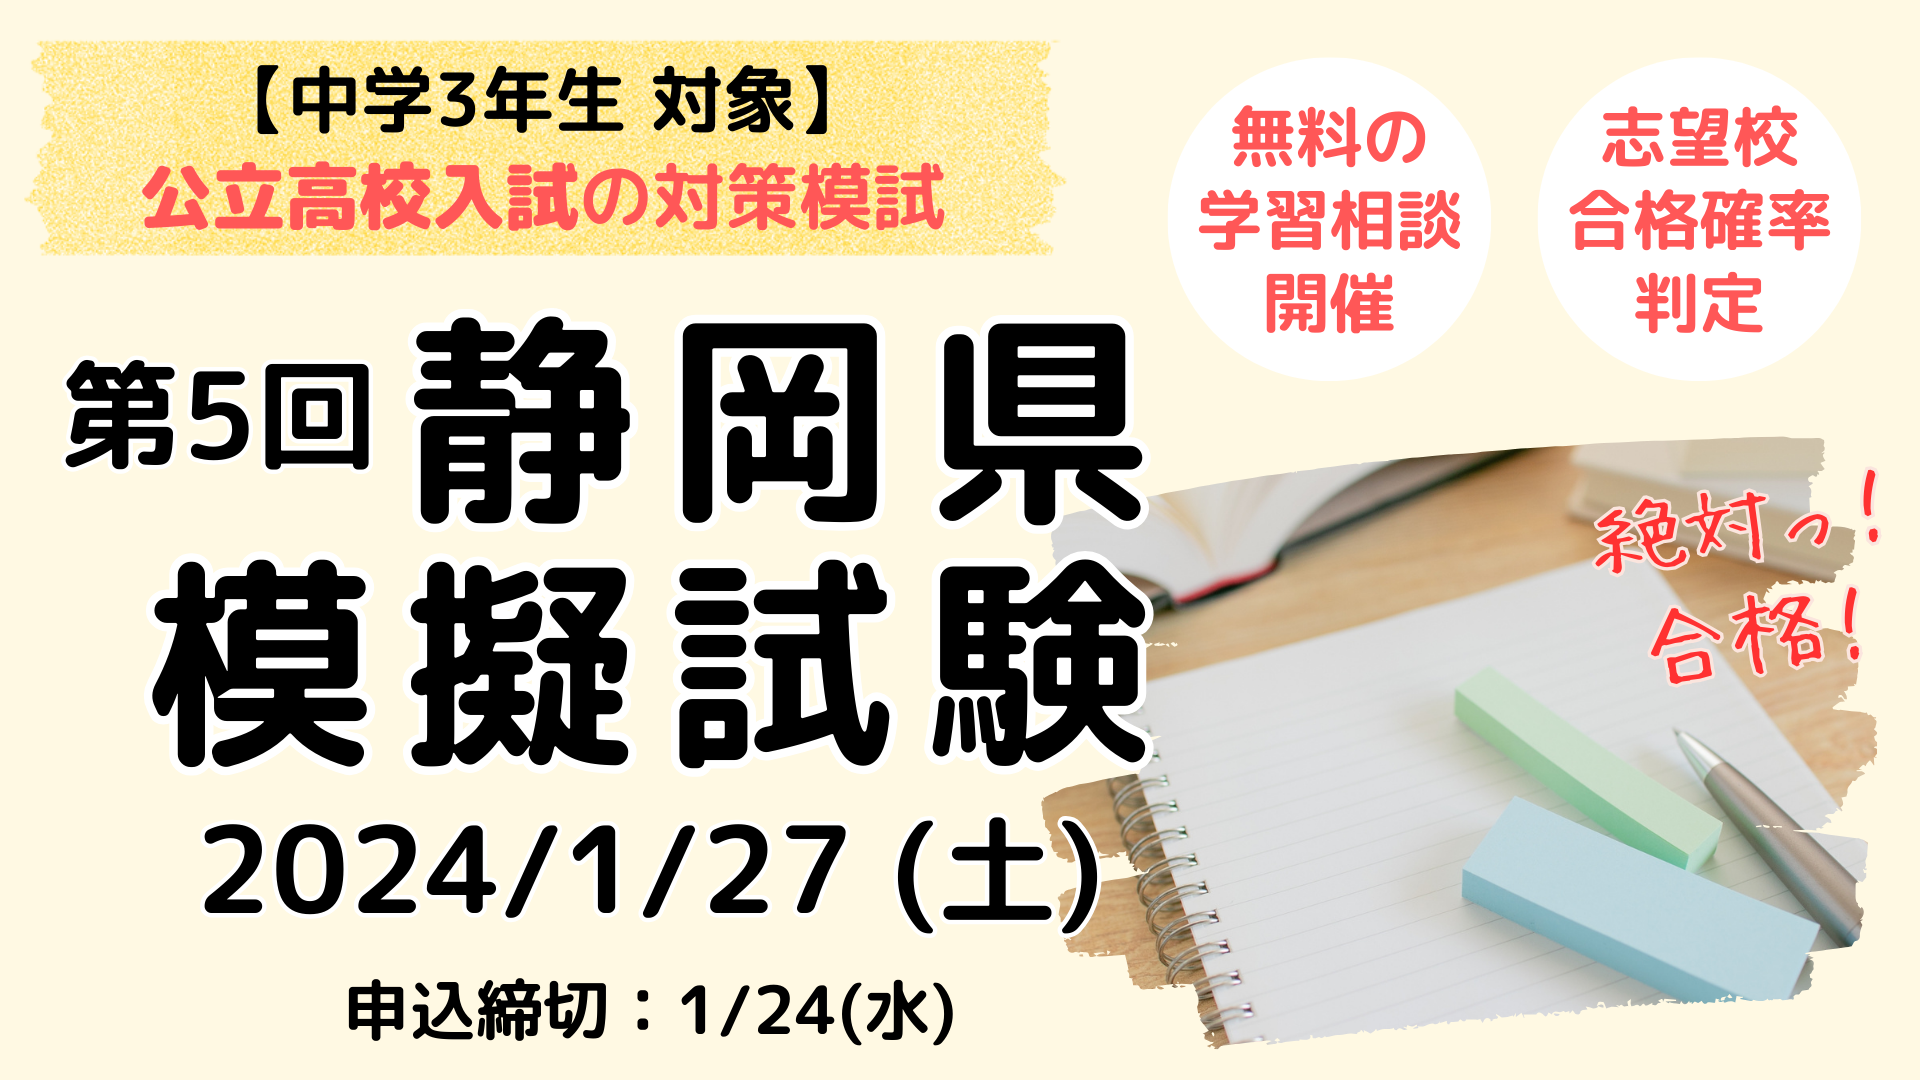 【中3対象】第5回静岡県模試 ※公立高校入試対策